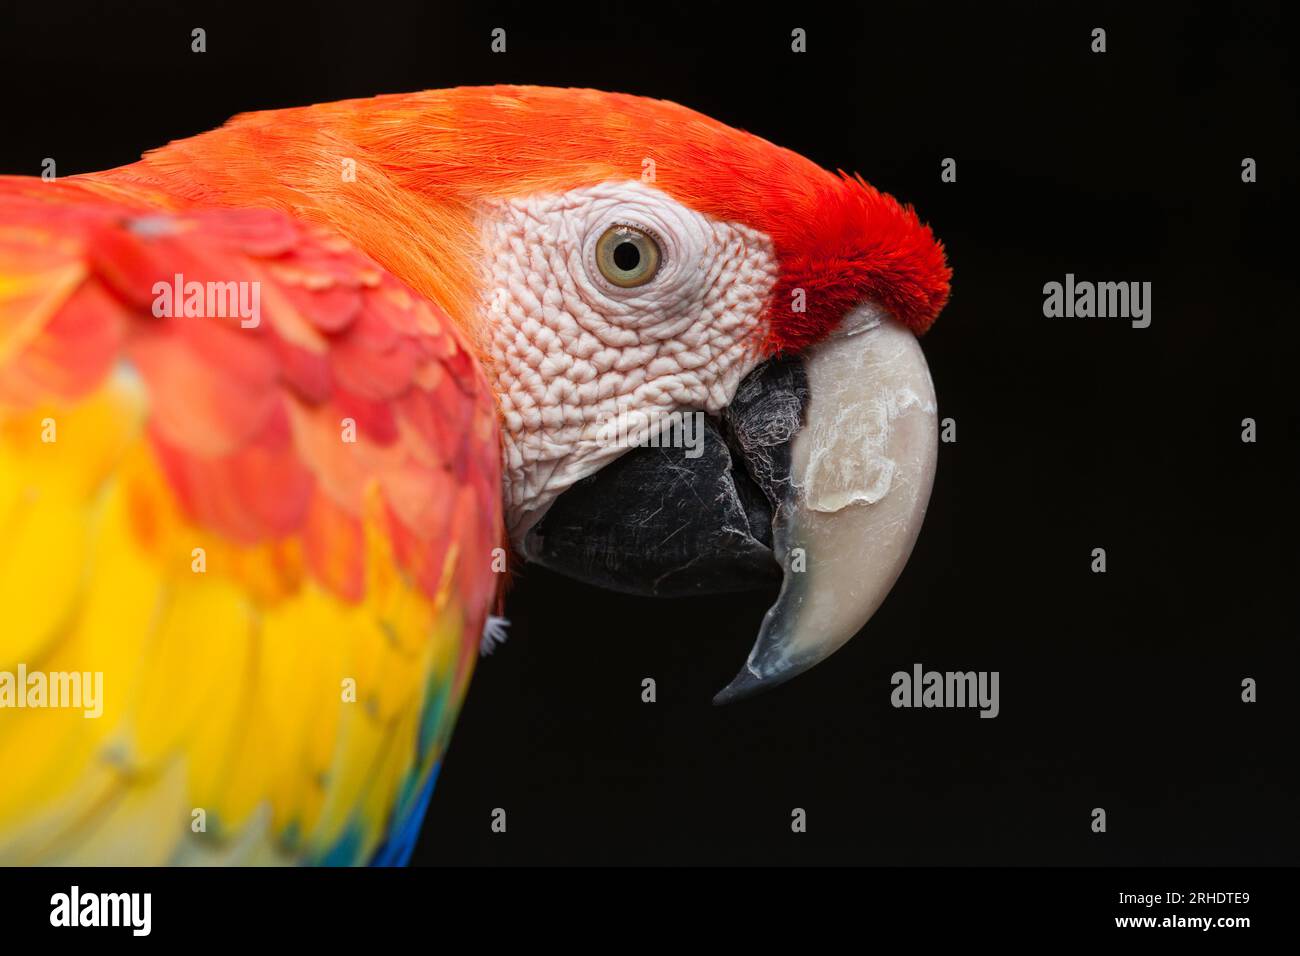 Scarlet Macaw - Ara macao - ritratto ravvicinato della testa che mostra un contatto visivo dettagliato, il suo piumaggio rosso brillante e l'impressionante becco agganciato. Foto Stock